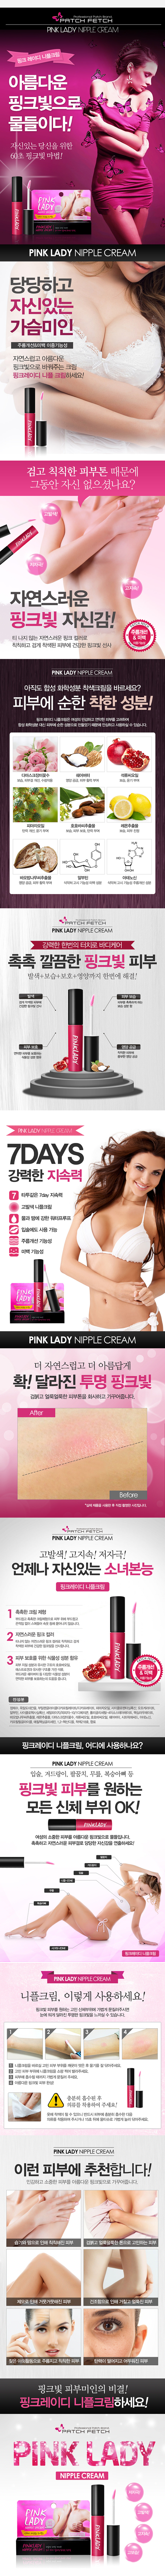 [핑크빛 고발색] 핑크 레이디 니플 크림(Patch Fetch Pink Lady Nipple Cream) - 7일간 지속/패치페치